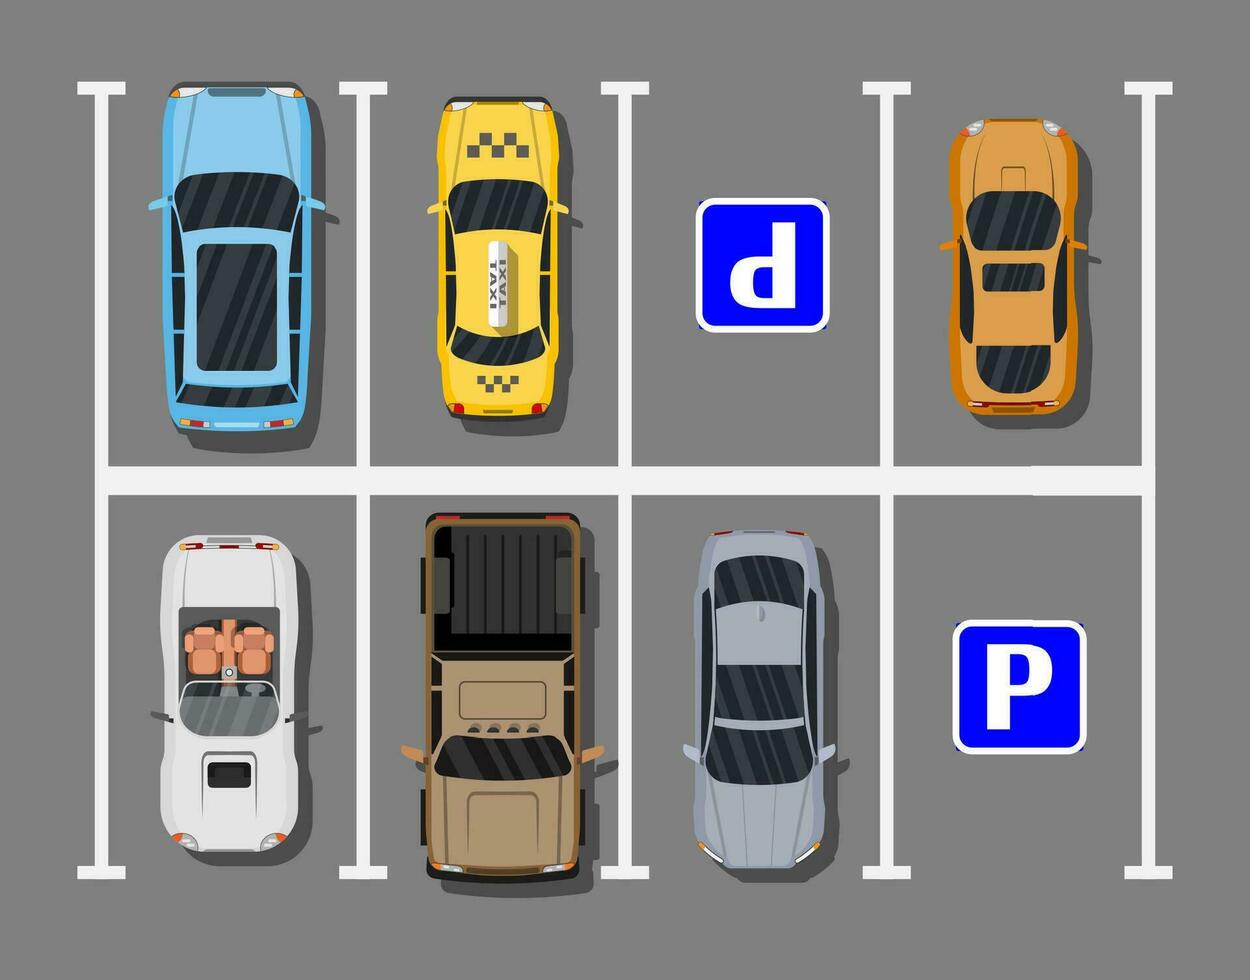 stad parkeren veel met verschillend auto's. tekort parkeren ruimtes. parkeren zone top visie met divers voertuigen. sedan, roadster, SUV, sport auto, oppakken. vector illustratie in vlak stijl